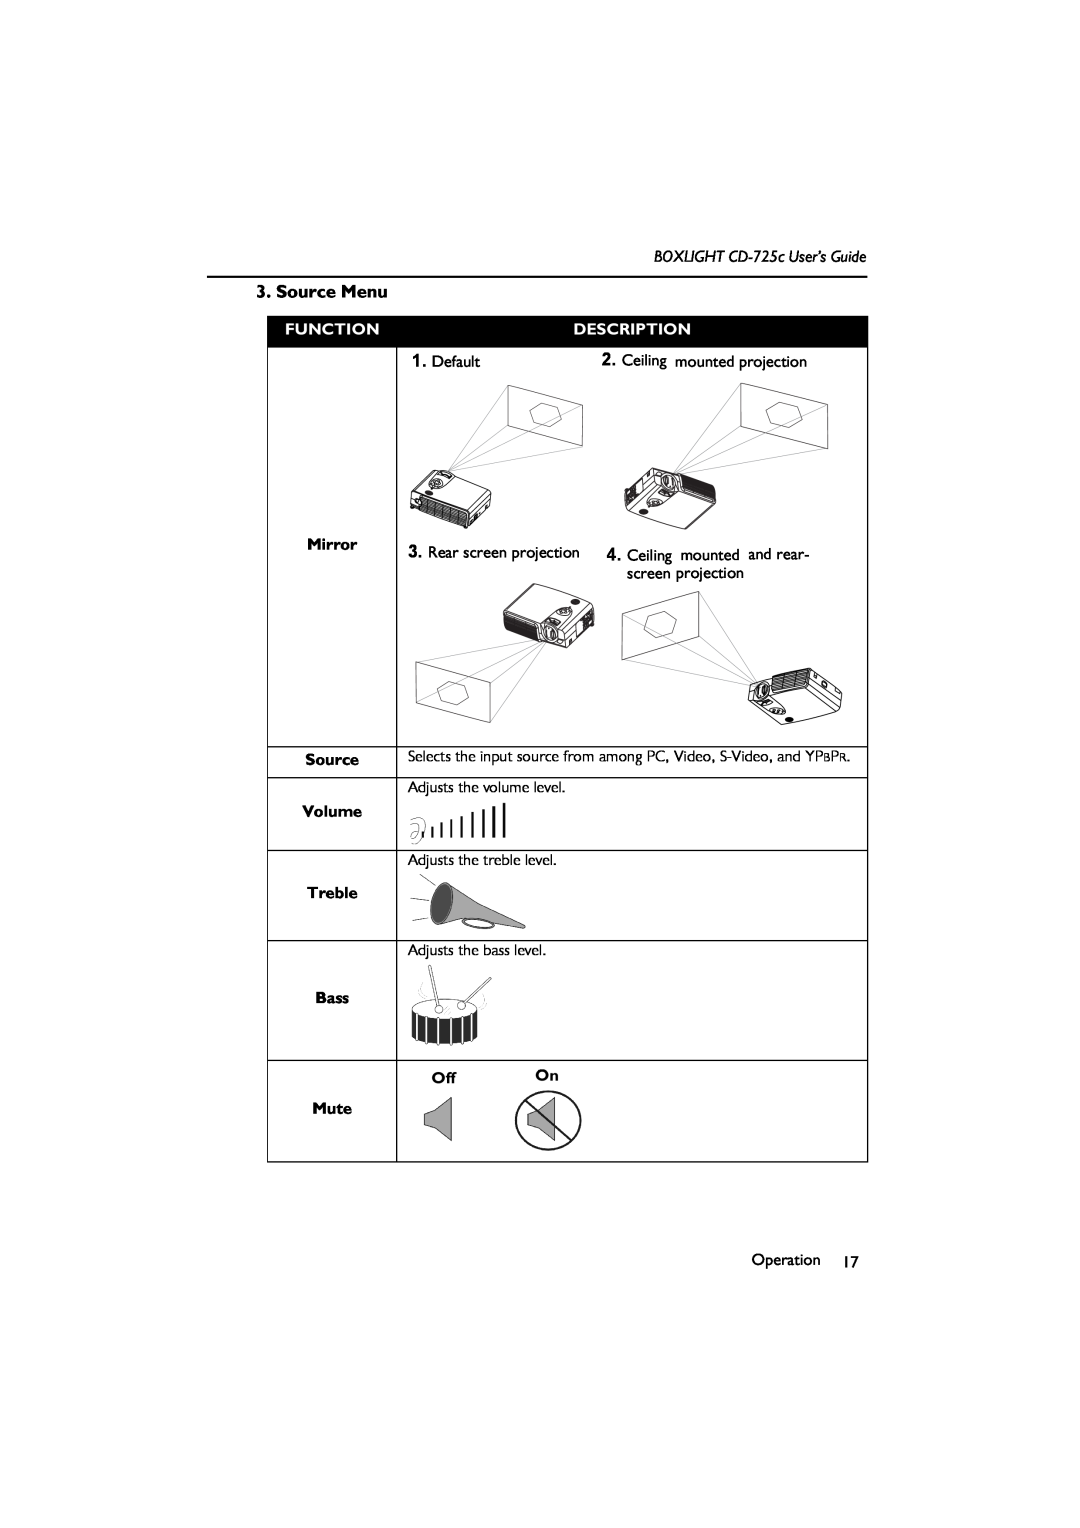 BOXLIGHT Source Menu, Function, Description, Default, Ceiling mounted projection, BOXLIGHT CD-725c User’s Guide, Bass 